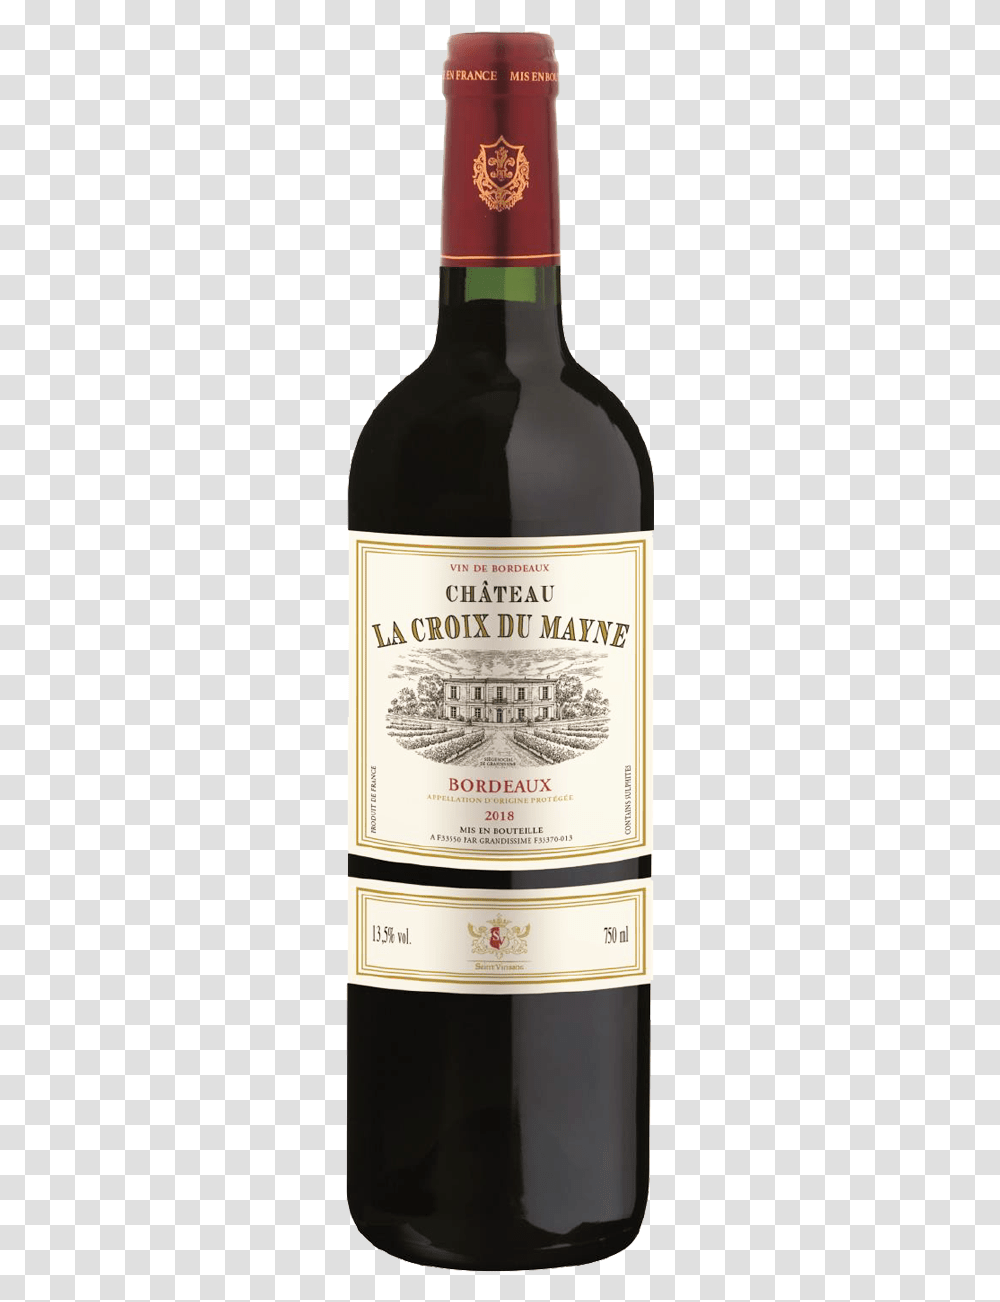 Chateau La Croix Du Mayne Bordeaux 2018 75cl Antica Cabernet Sauvignon 2015, Liquor, Alcohol, Beverage, Label Transparent Png